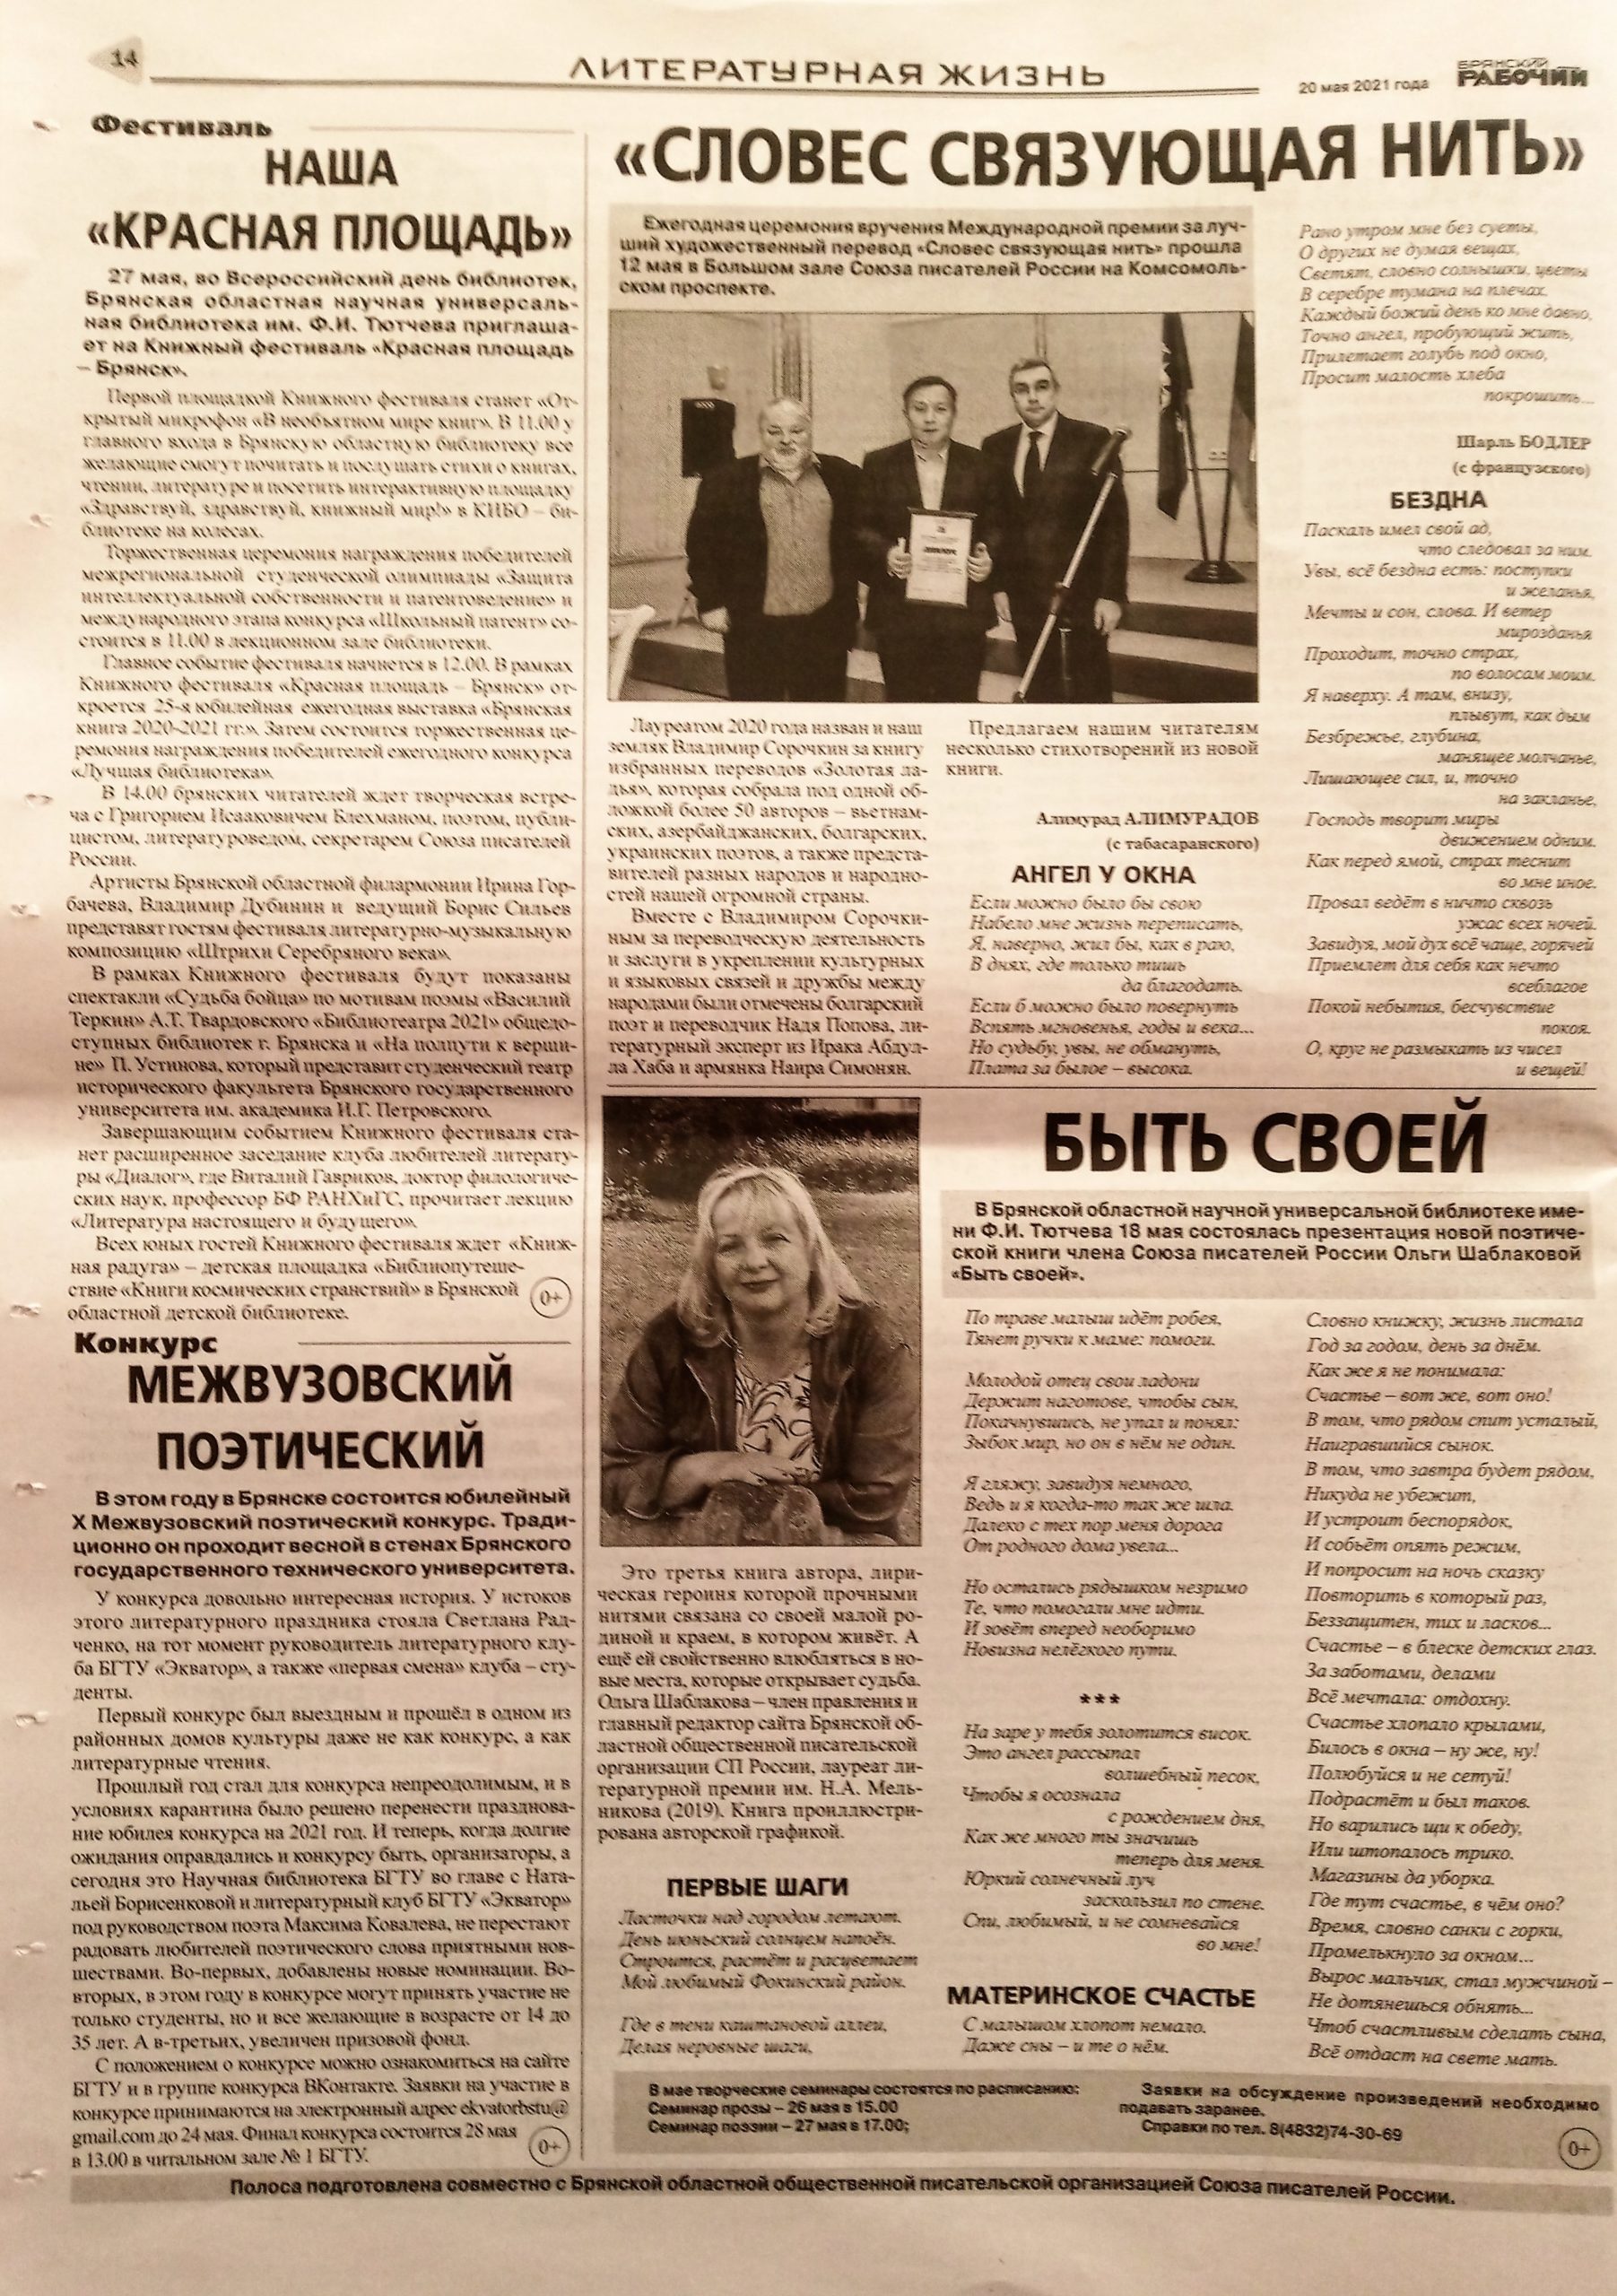 В газете «Брянский рабочий» вышла литературная страница